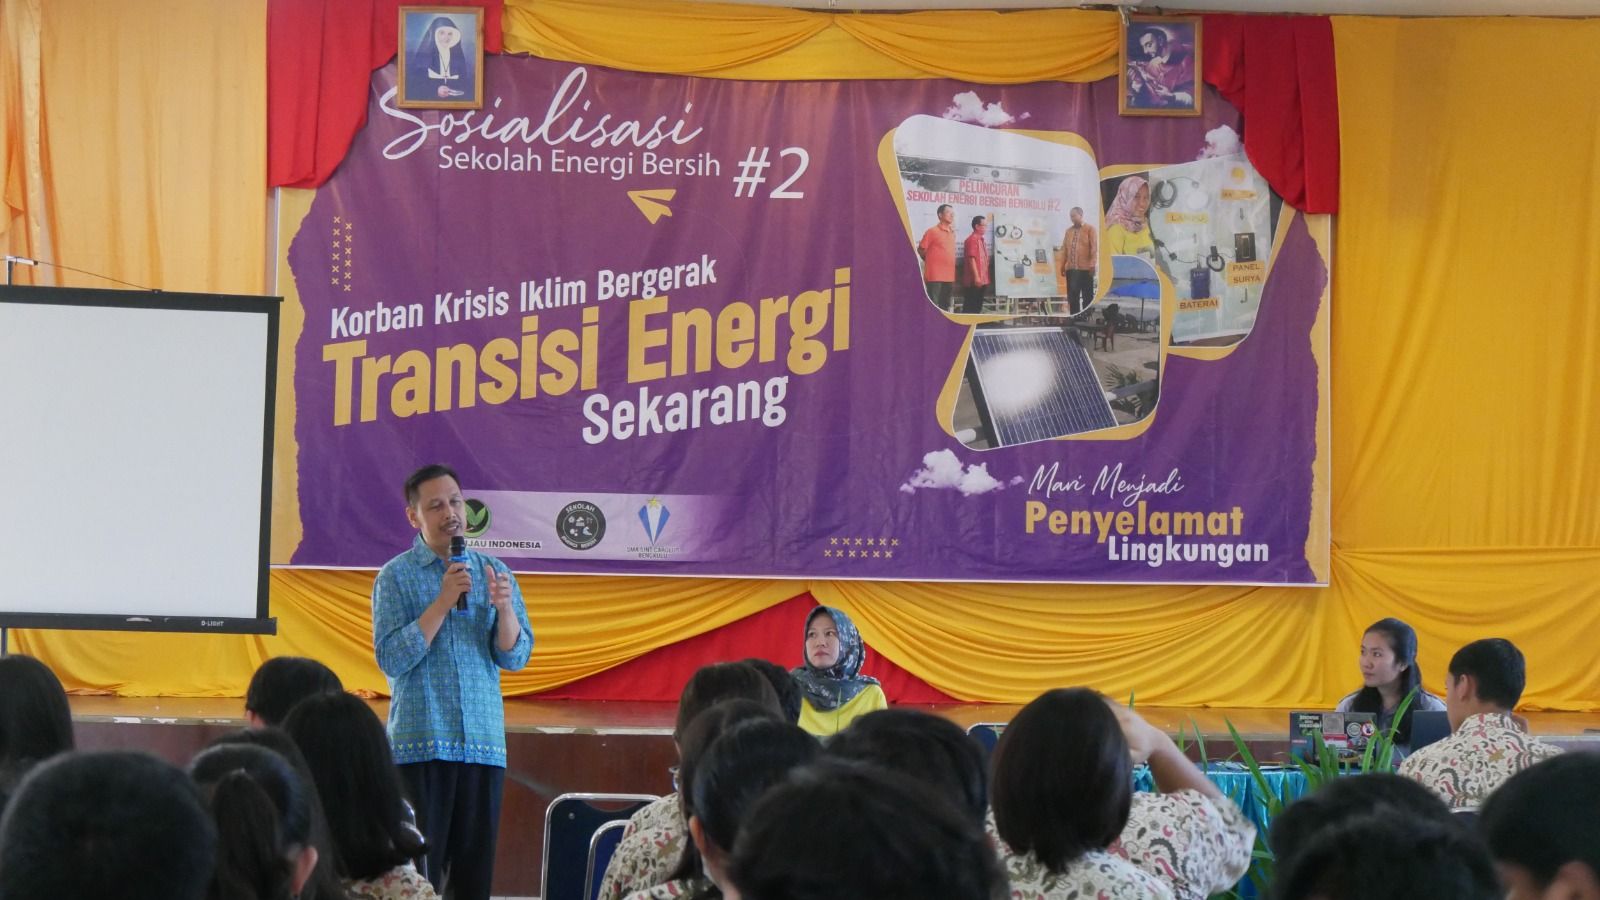 Sosialisasi Sekolah Energi Bersih #2 dengan tema "Korban Krisis Iklim Bergerak, Transisi Energi Sekarang". Acara ini diadakan pada tanggal 9 Juni 2023 di Aula SMA Sint Carolus di Kota Bengkulu.